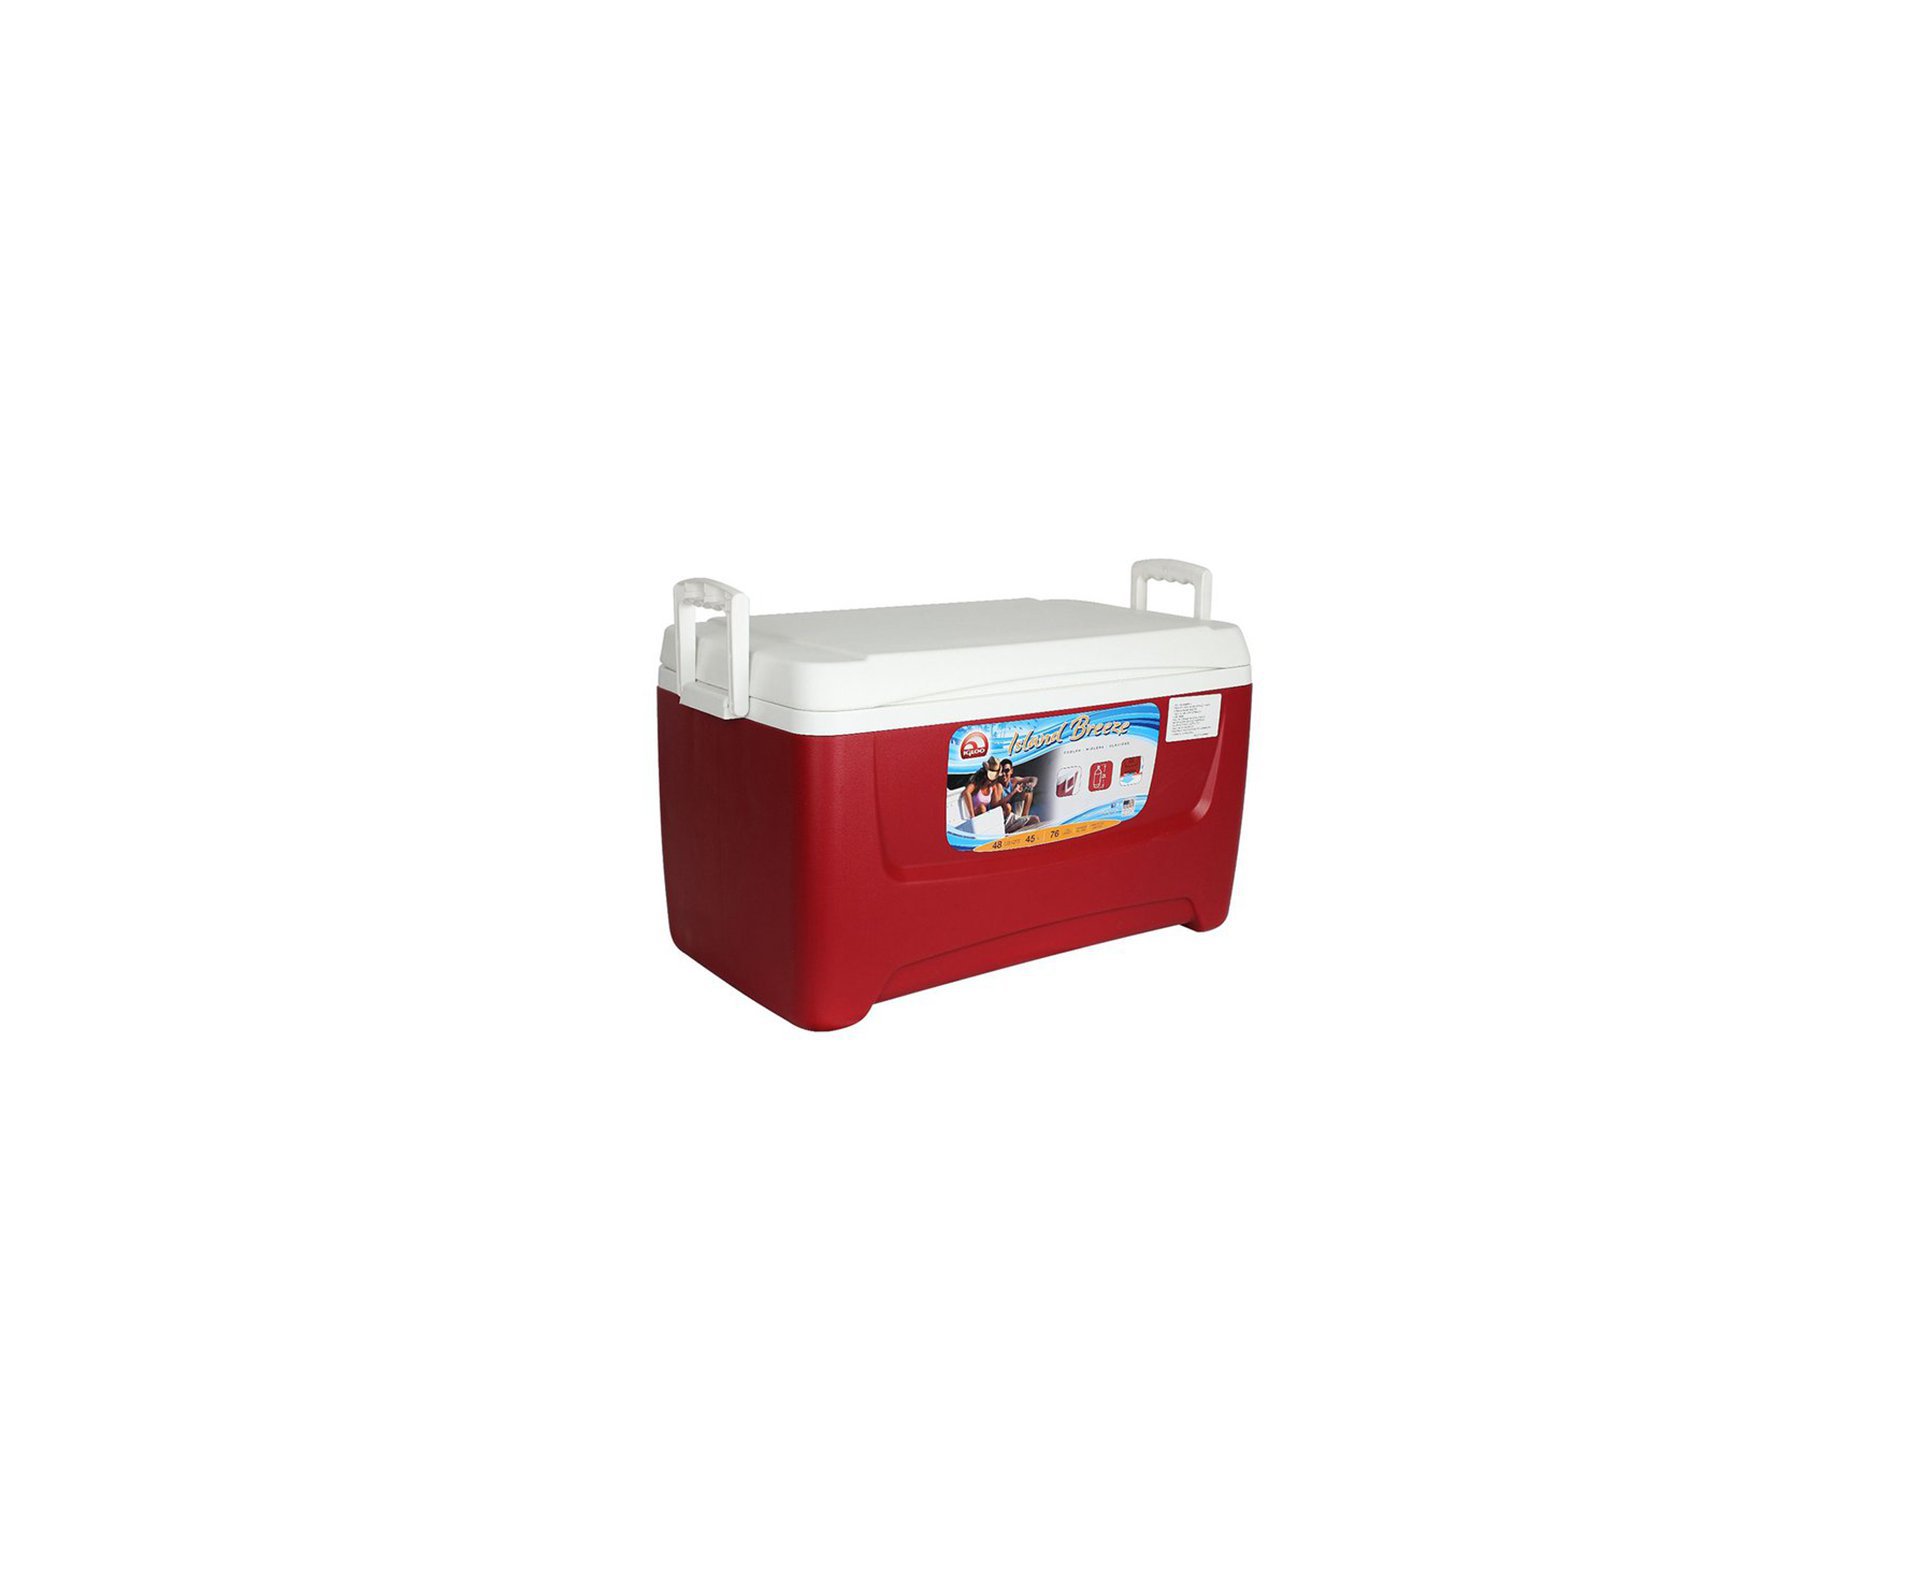 Caixa Termica Cooler Igloo Usa 48qt / 45l Vermelho